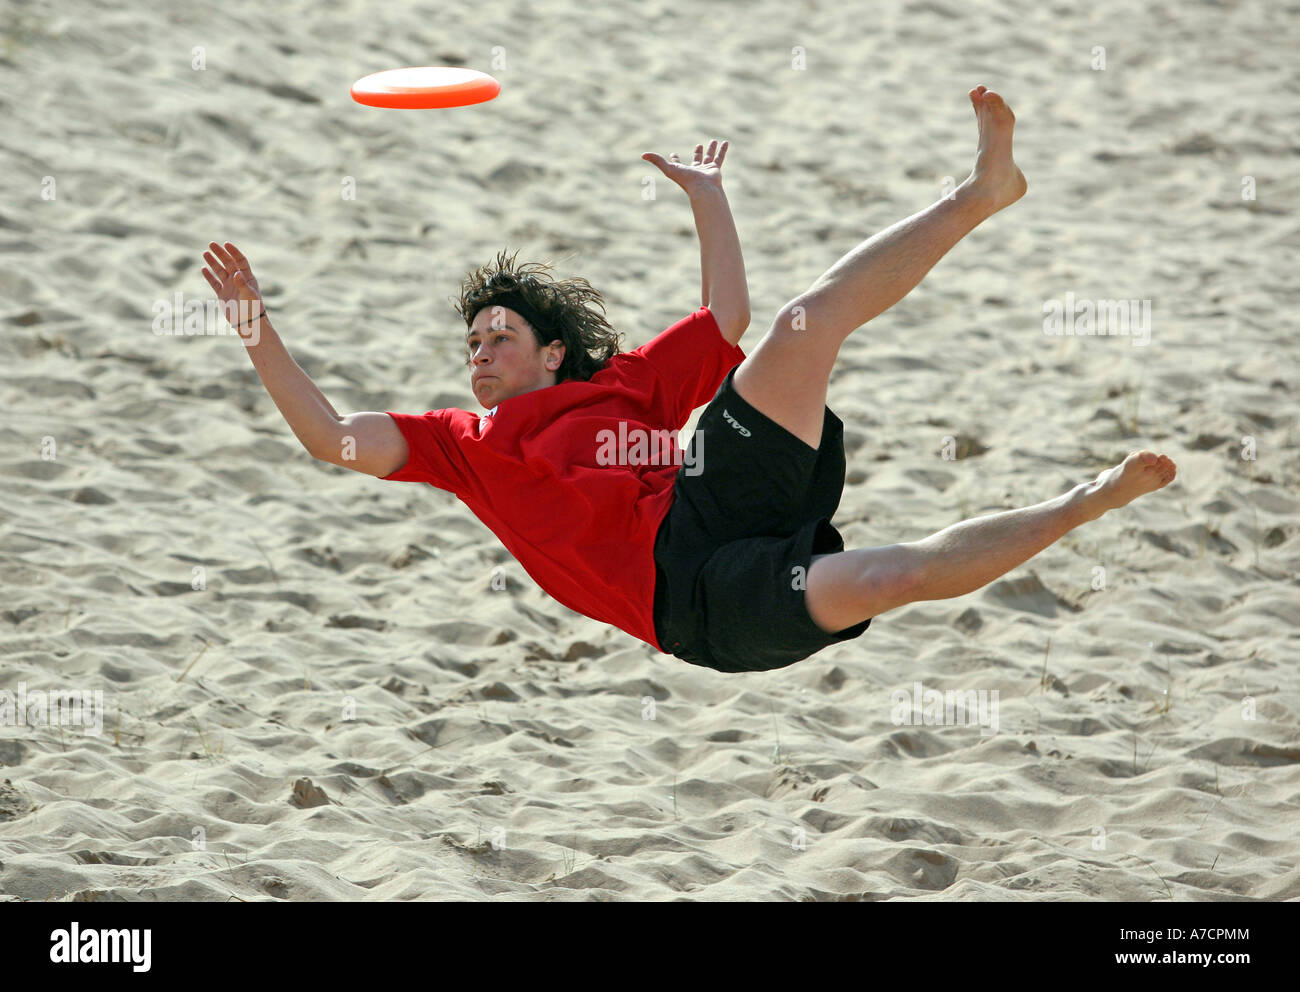 Mann in der Luft beteiligt sich an extreme Sports ultimate Frisbee am  Balmedie Strand, Aberdeen, Aberdeenshire, UK Stockfotografie - Alamy